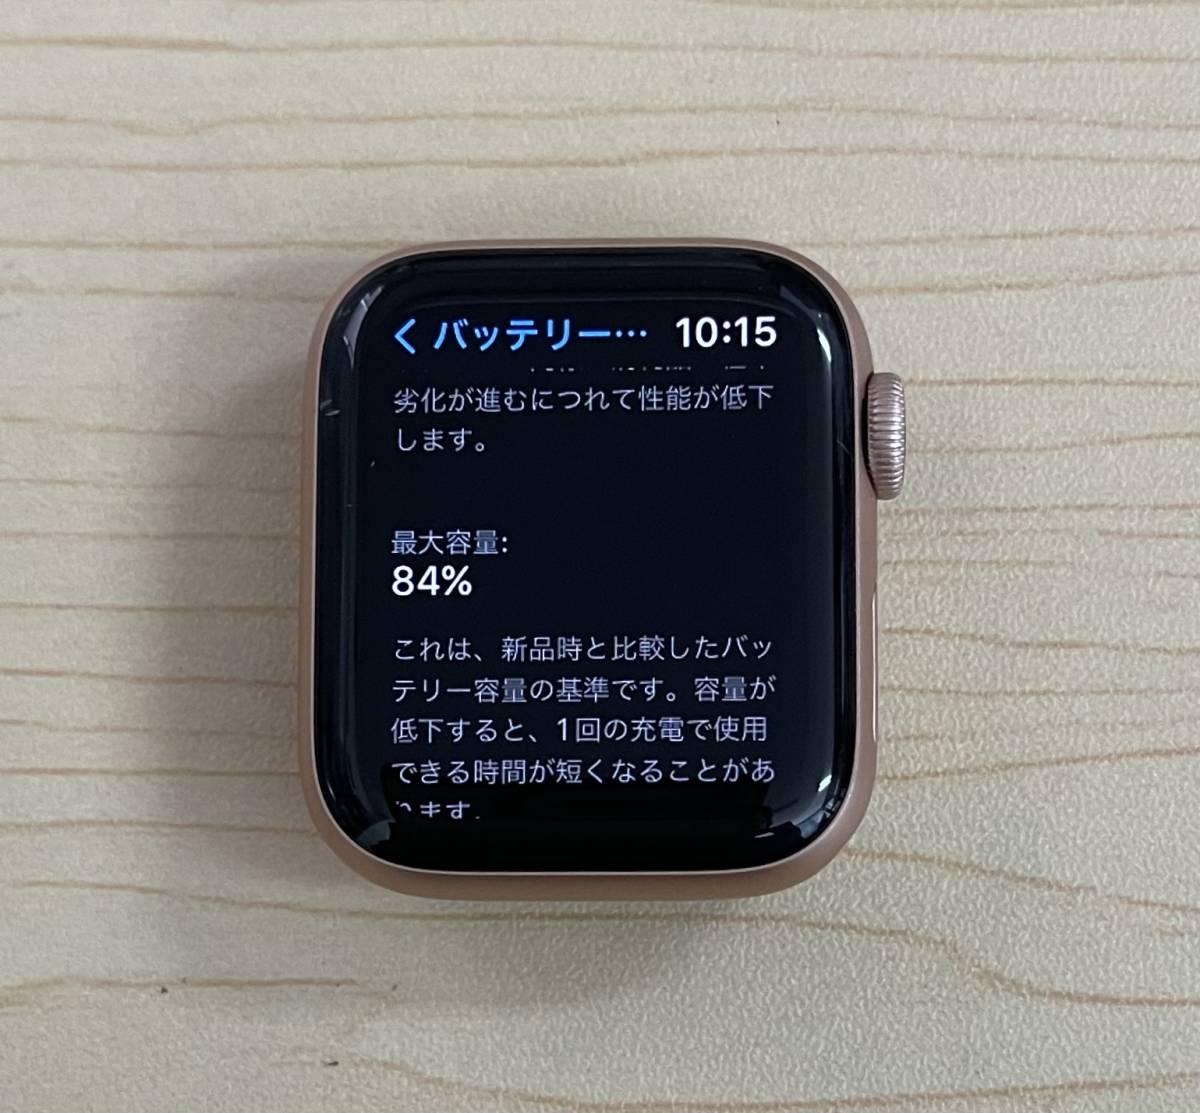 Apple Watch Series 5 GPS+Cellularモデル 40mm ゴールド アルミニウム